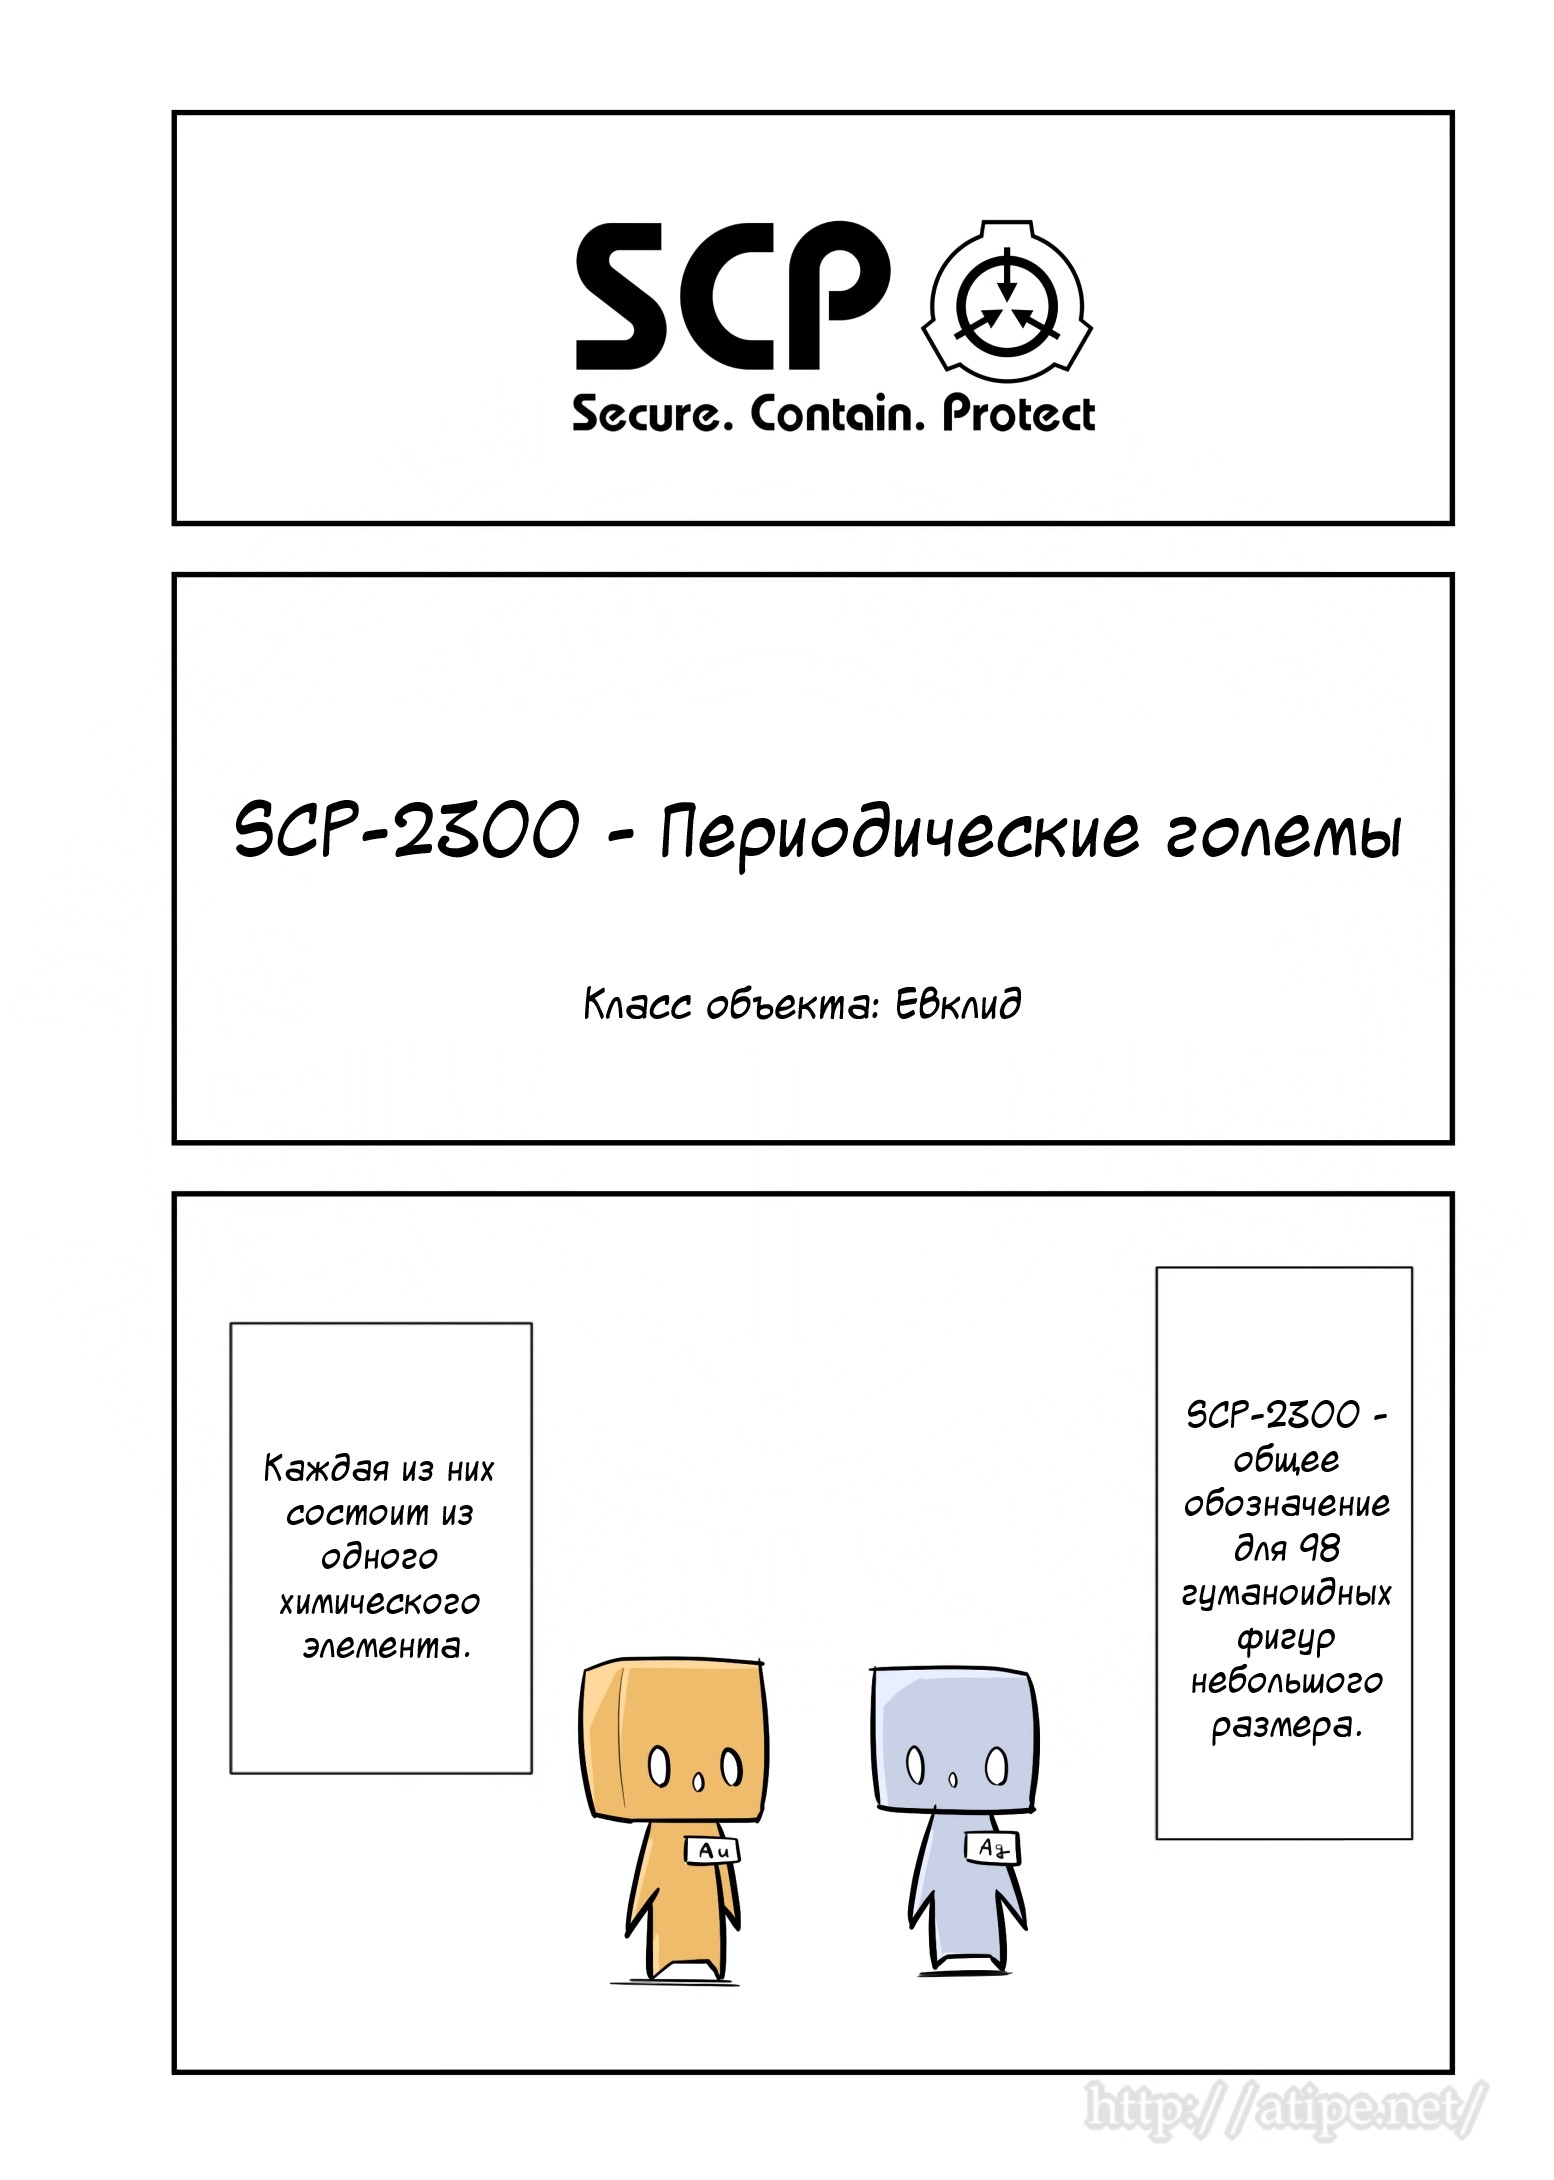 Упрощенный SCP 1 - 75 SCP-2300